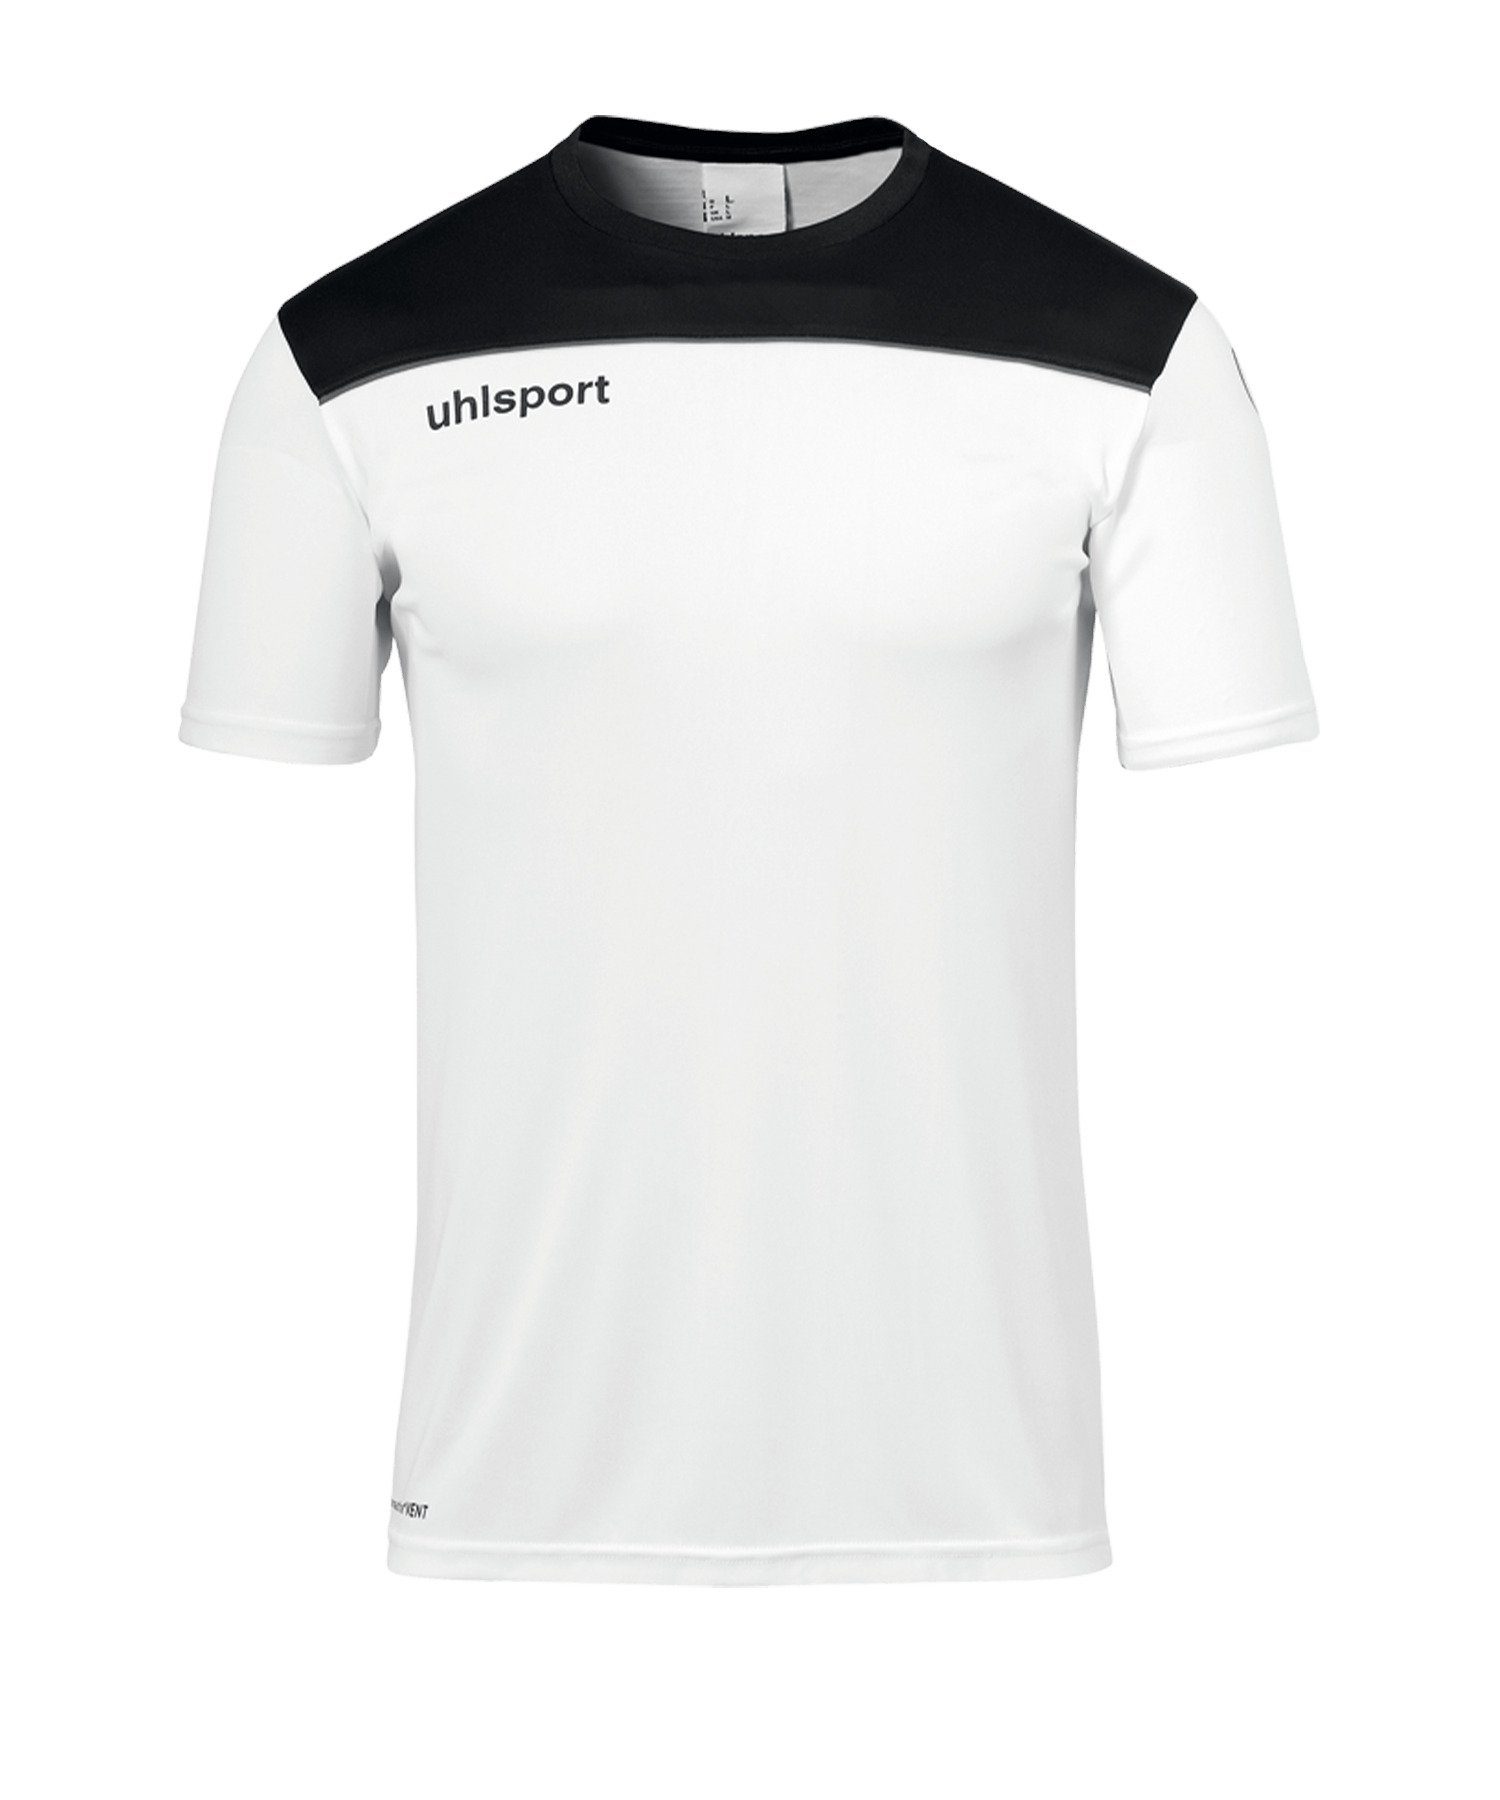 uhlsport T-Shirt weissschwarz 23 Offense Trainingsshirt default